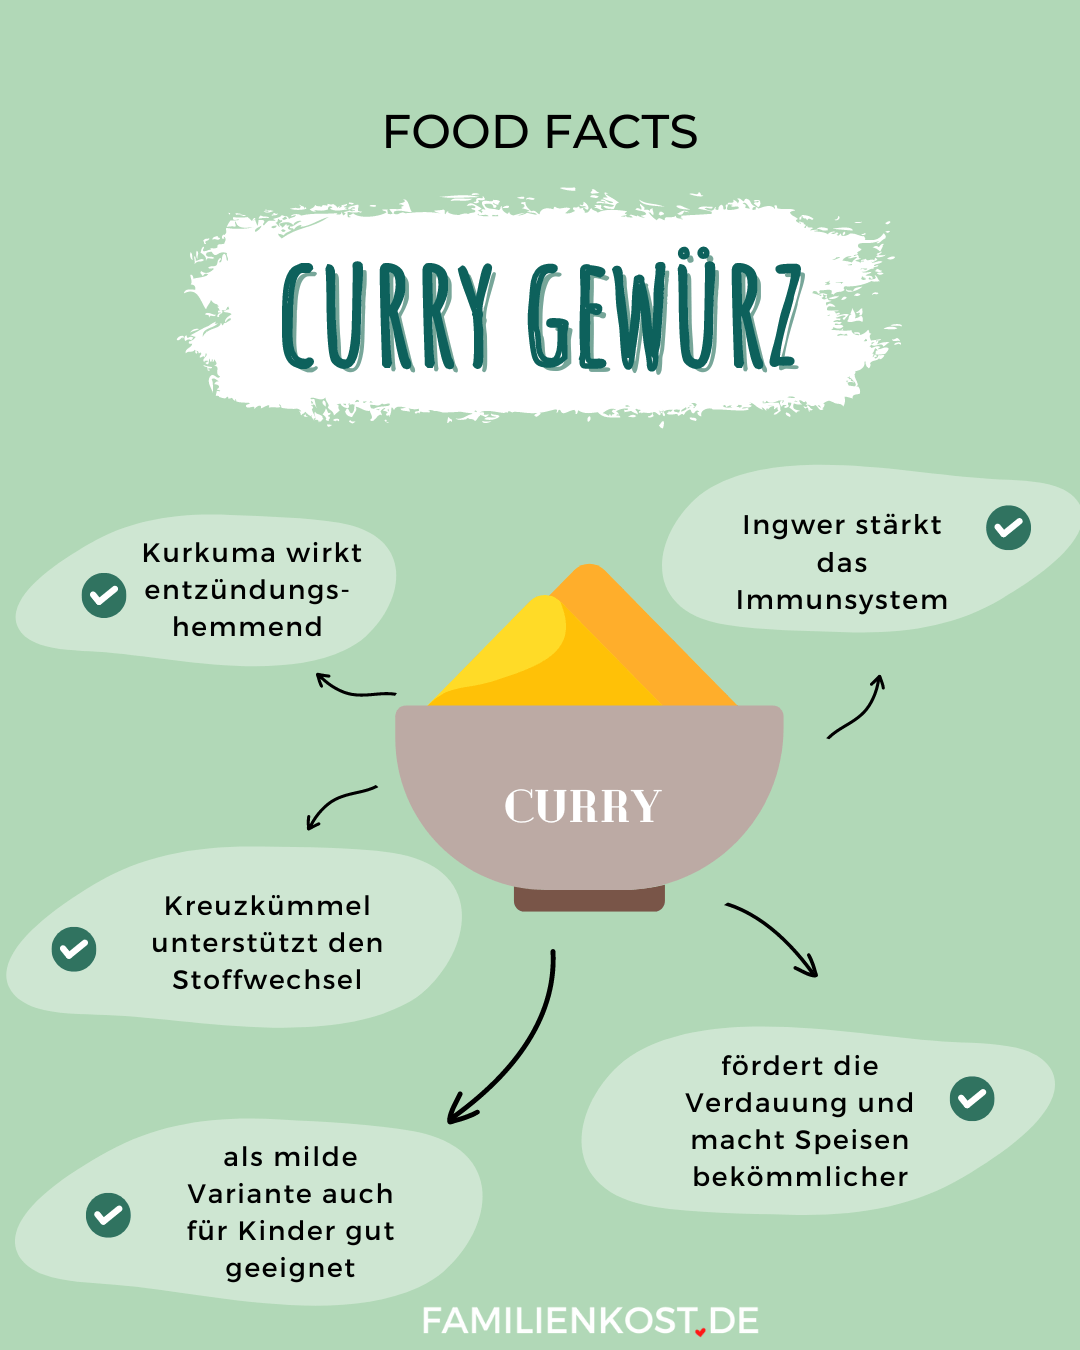 Curry gesund